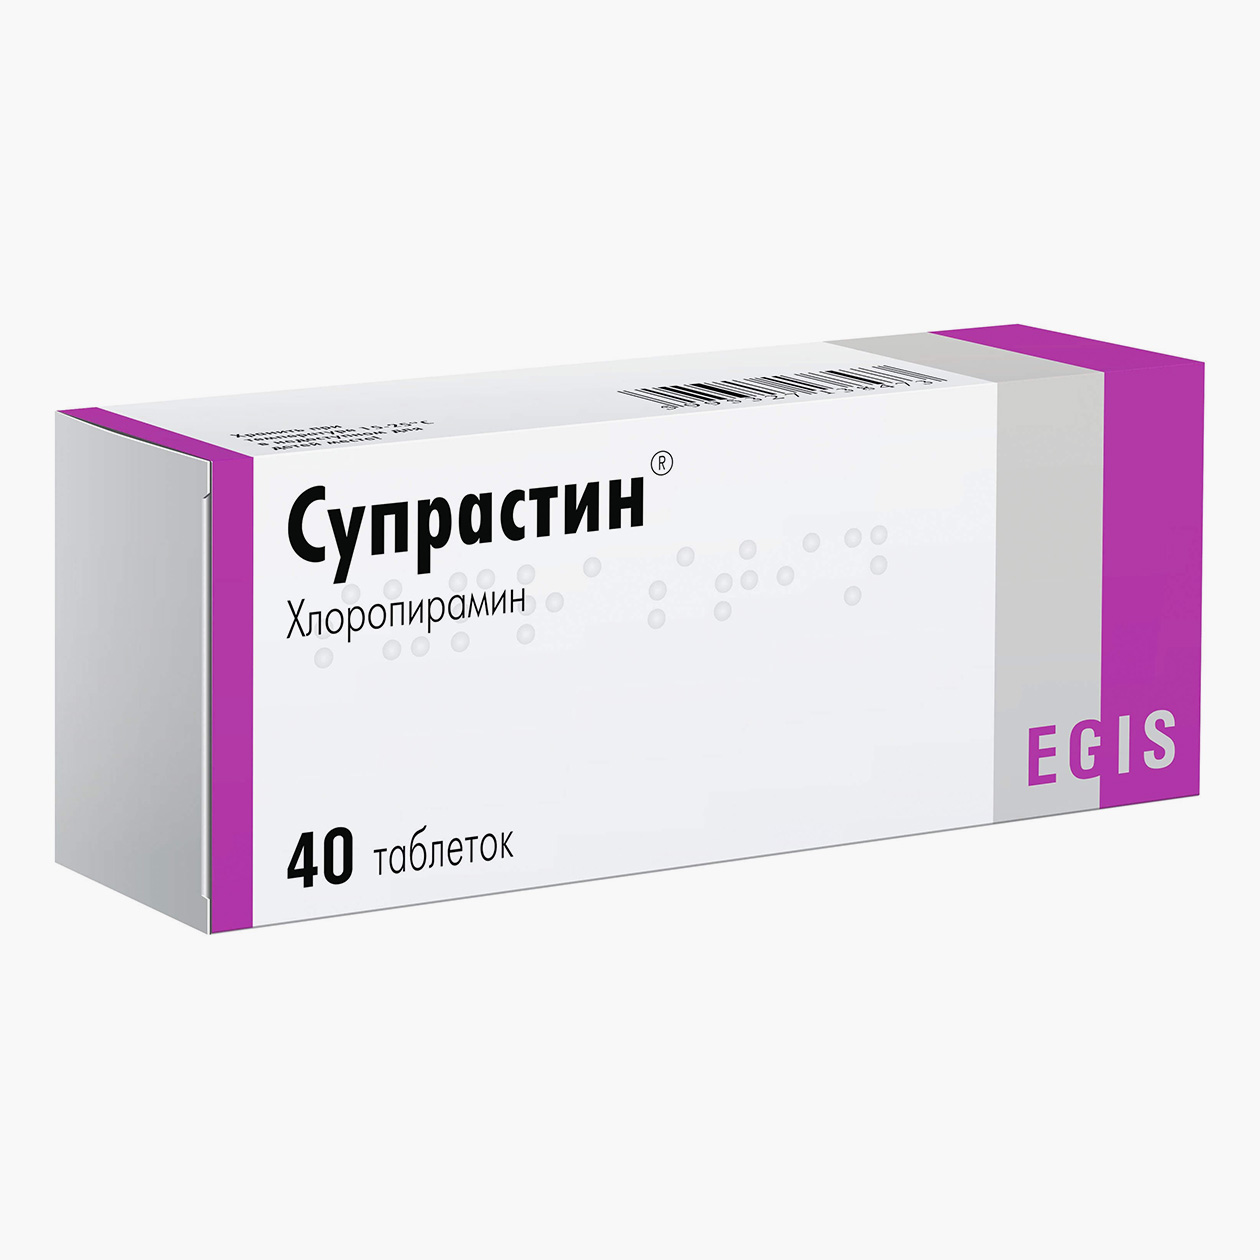 Противоаллергический препарат первого поколения, который лучше не покупать. Источник: eapteka.ru